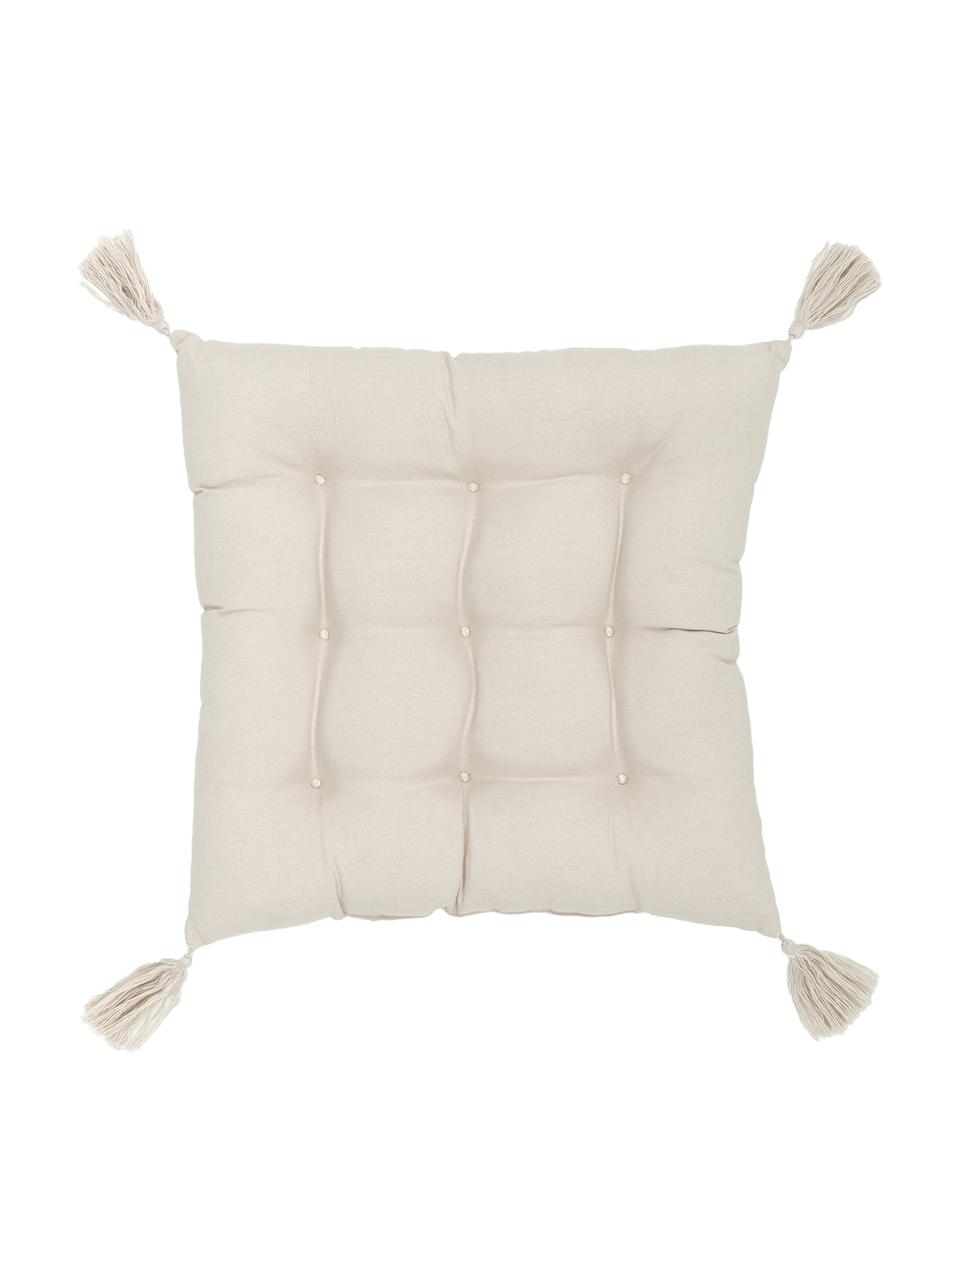 Baumwoll-Sitzkissen Ava in Beige mit Quasten, Bezug: 100% Baumwolle, Beige, 40 x 40 cm